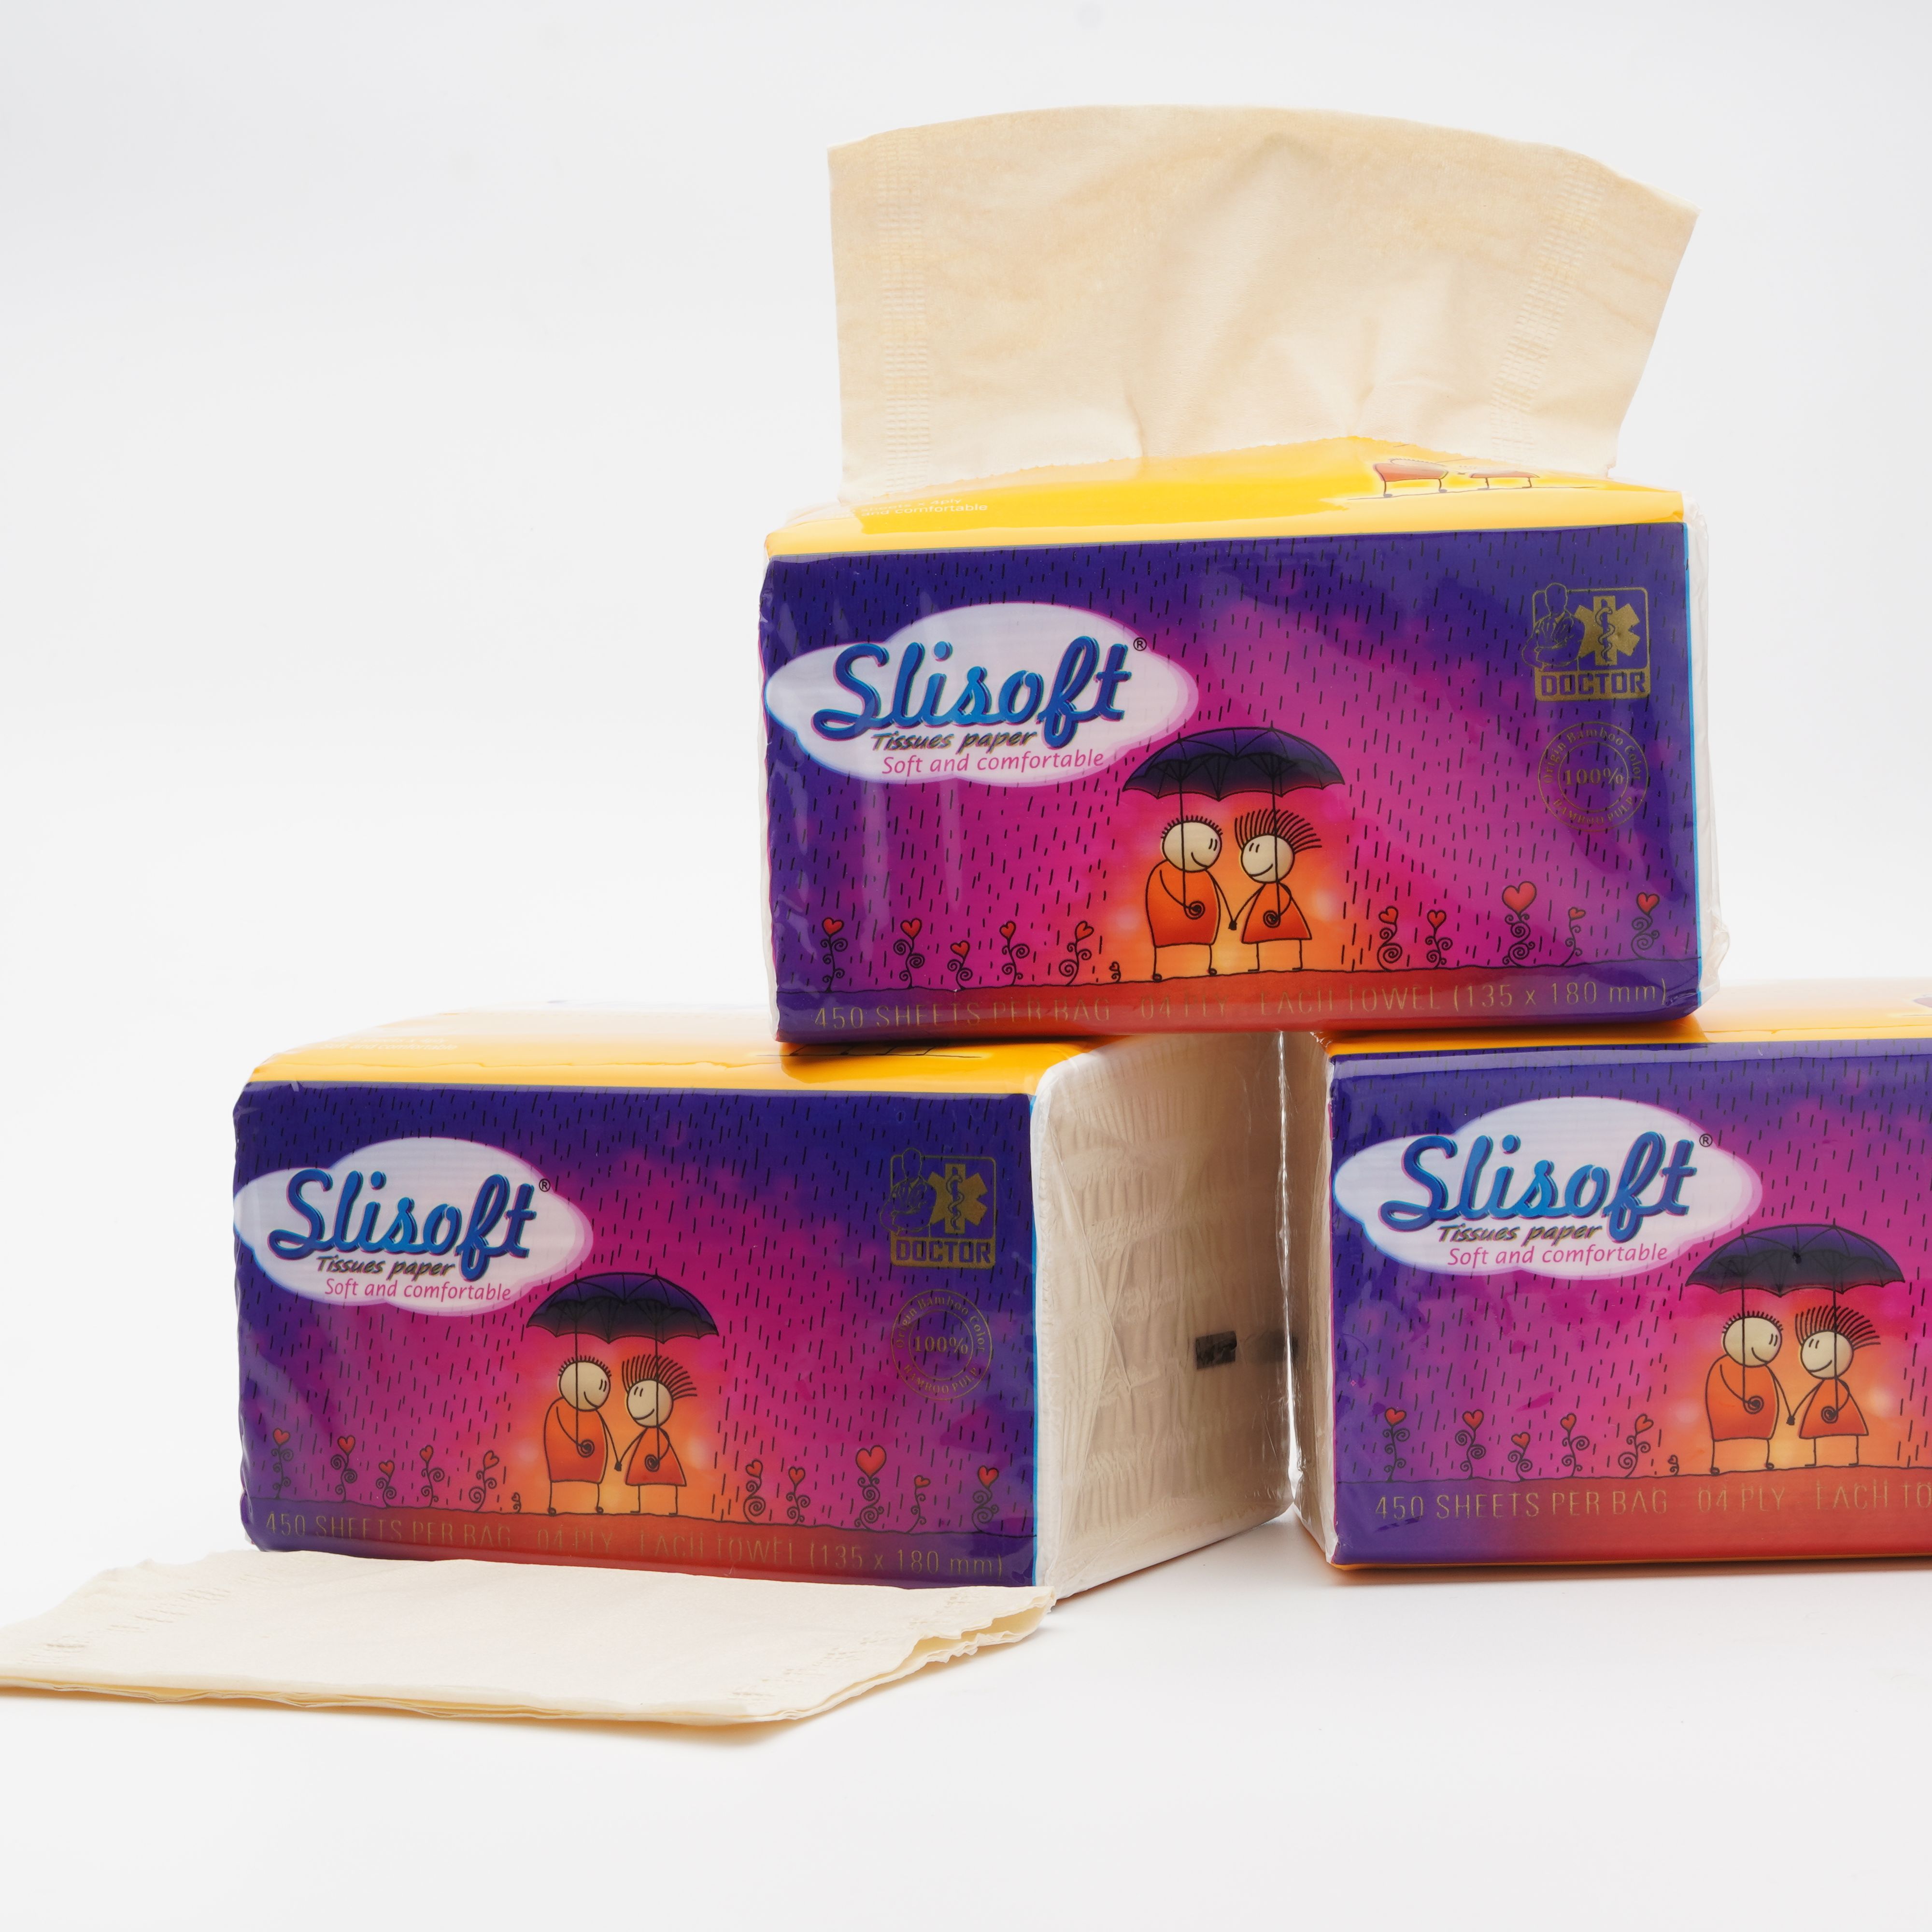 giấy ăn để bàn slisoft 4 lớp đa năng thân thiện môi trường không chất tẩy 6